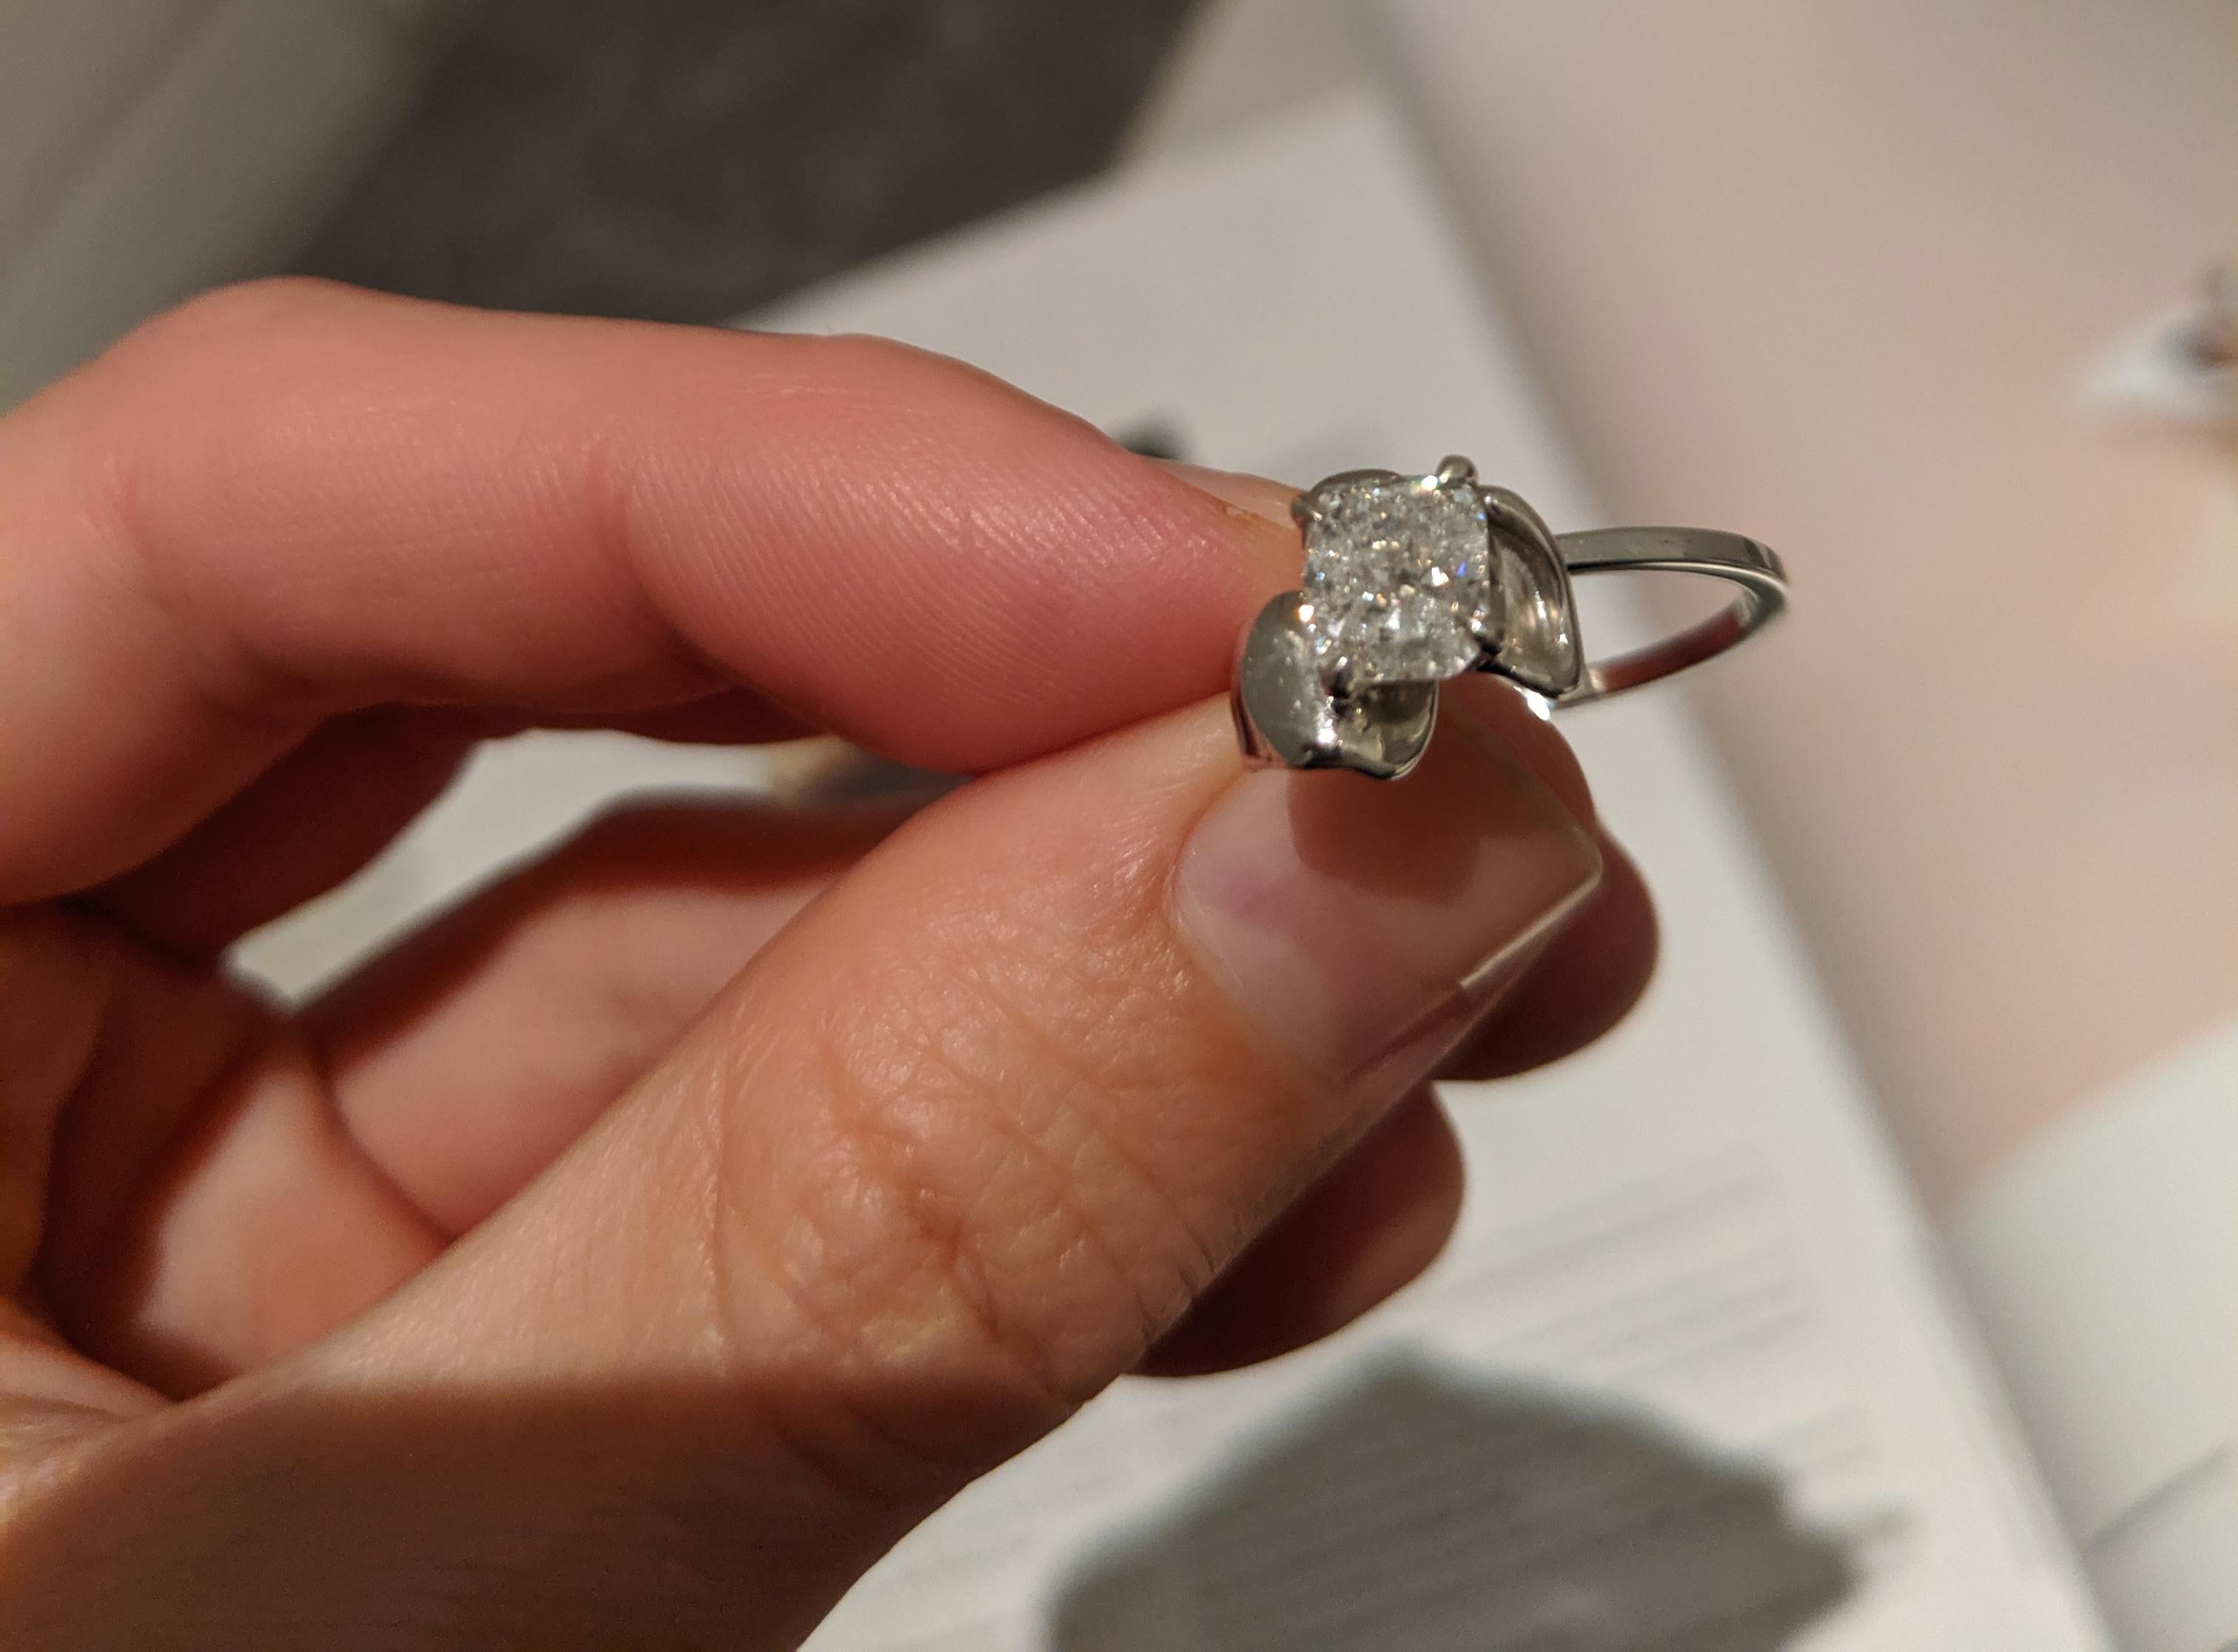 Cushion Cut 18 Karat White Gold Bridal Ring with GIA Certified 1.01 Carat Diamond